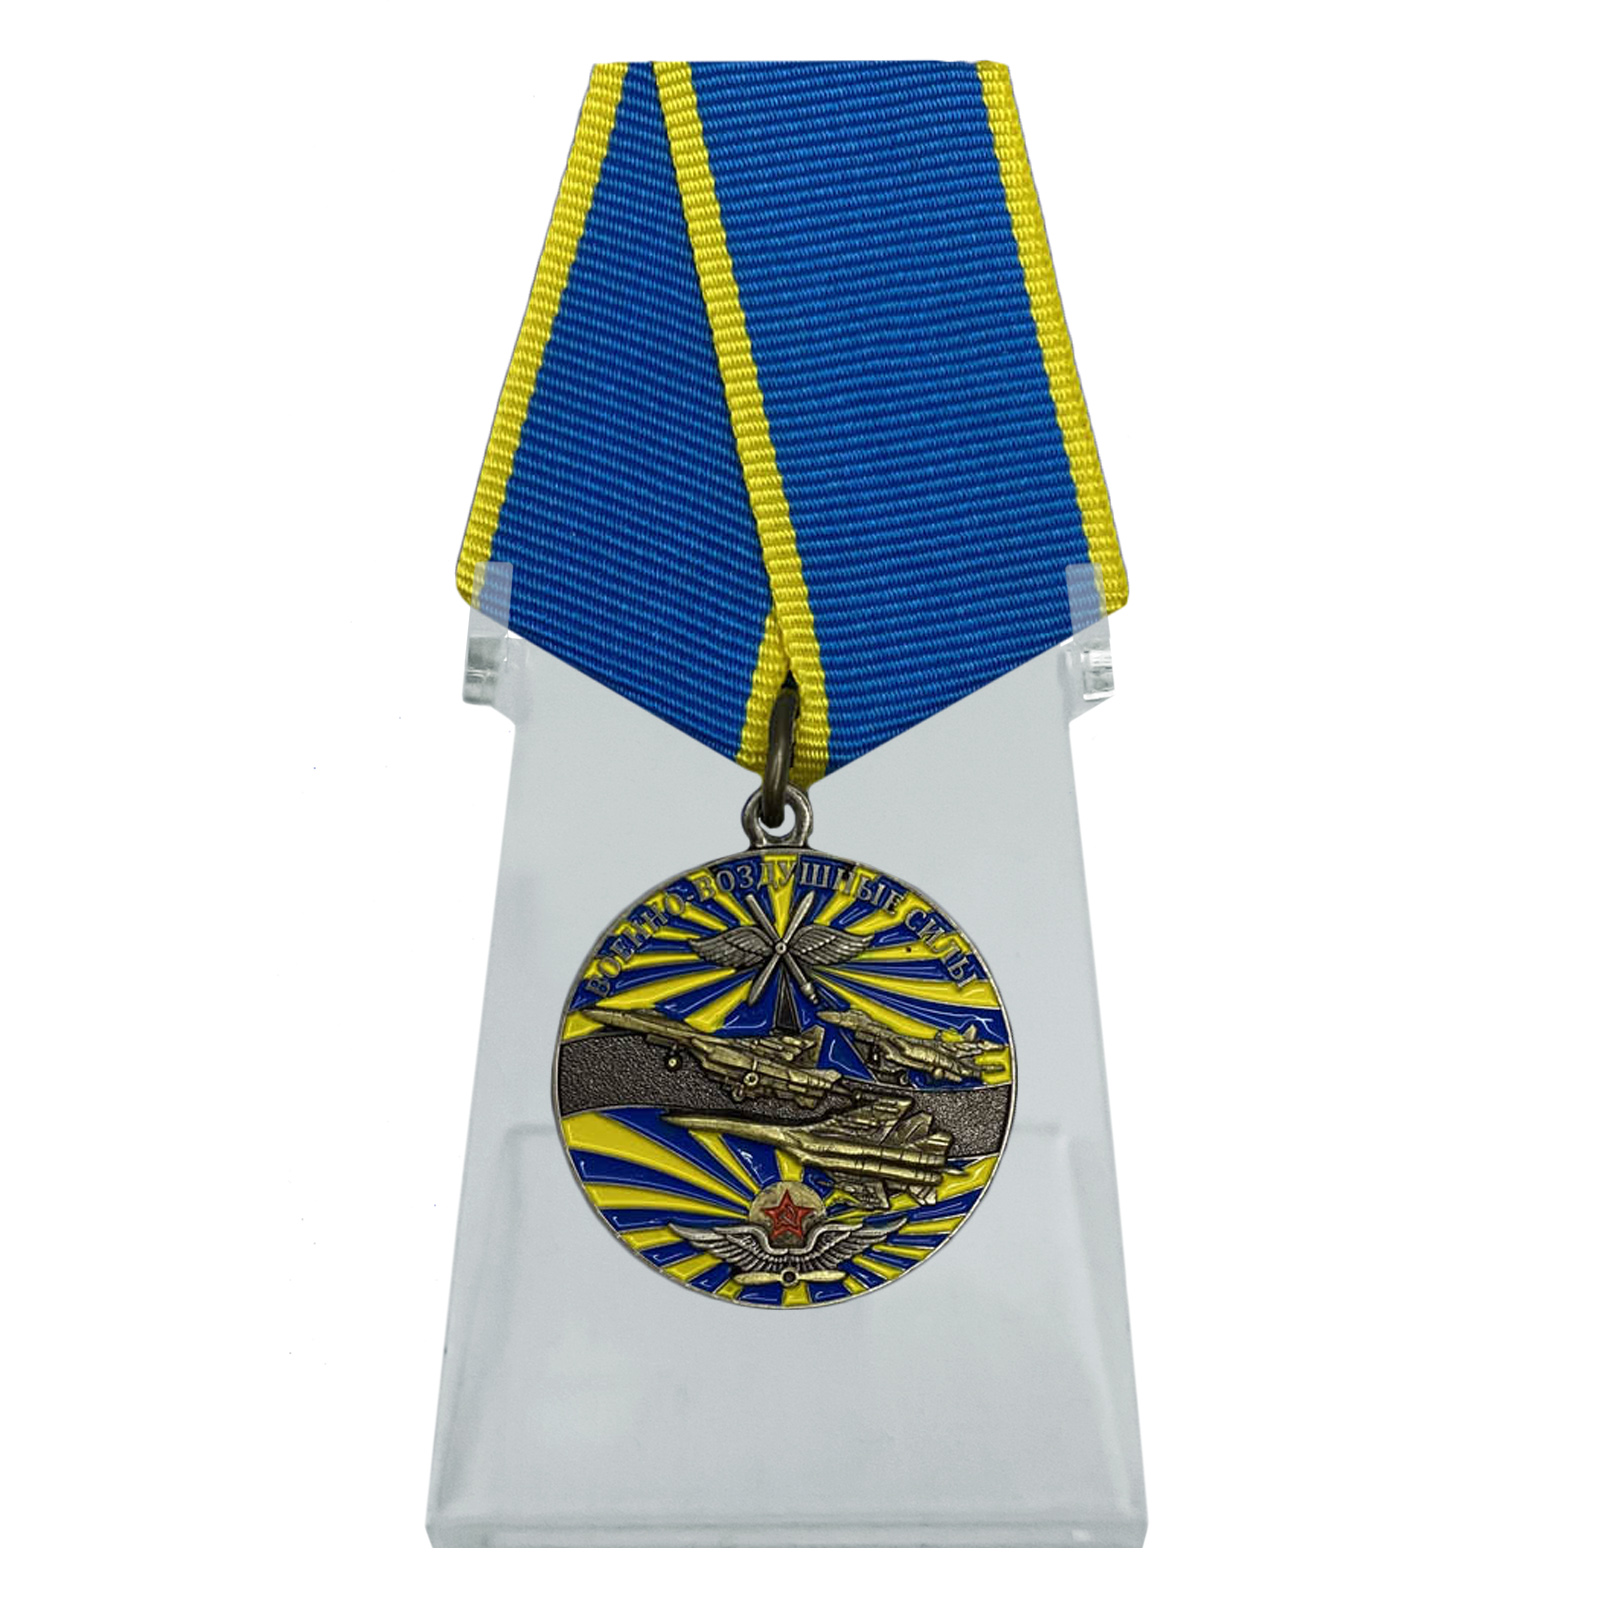 Купить медаль Ветеран ВВС на подставке с доставкой в ваш город